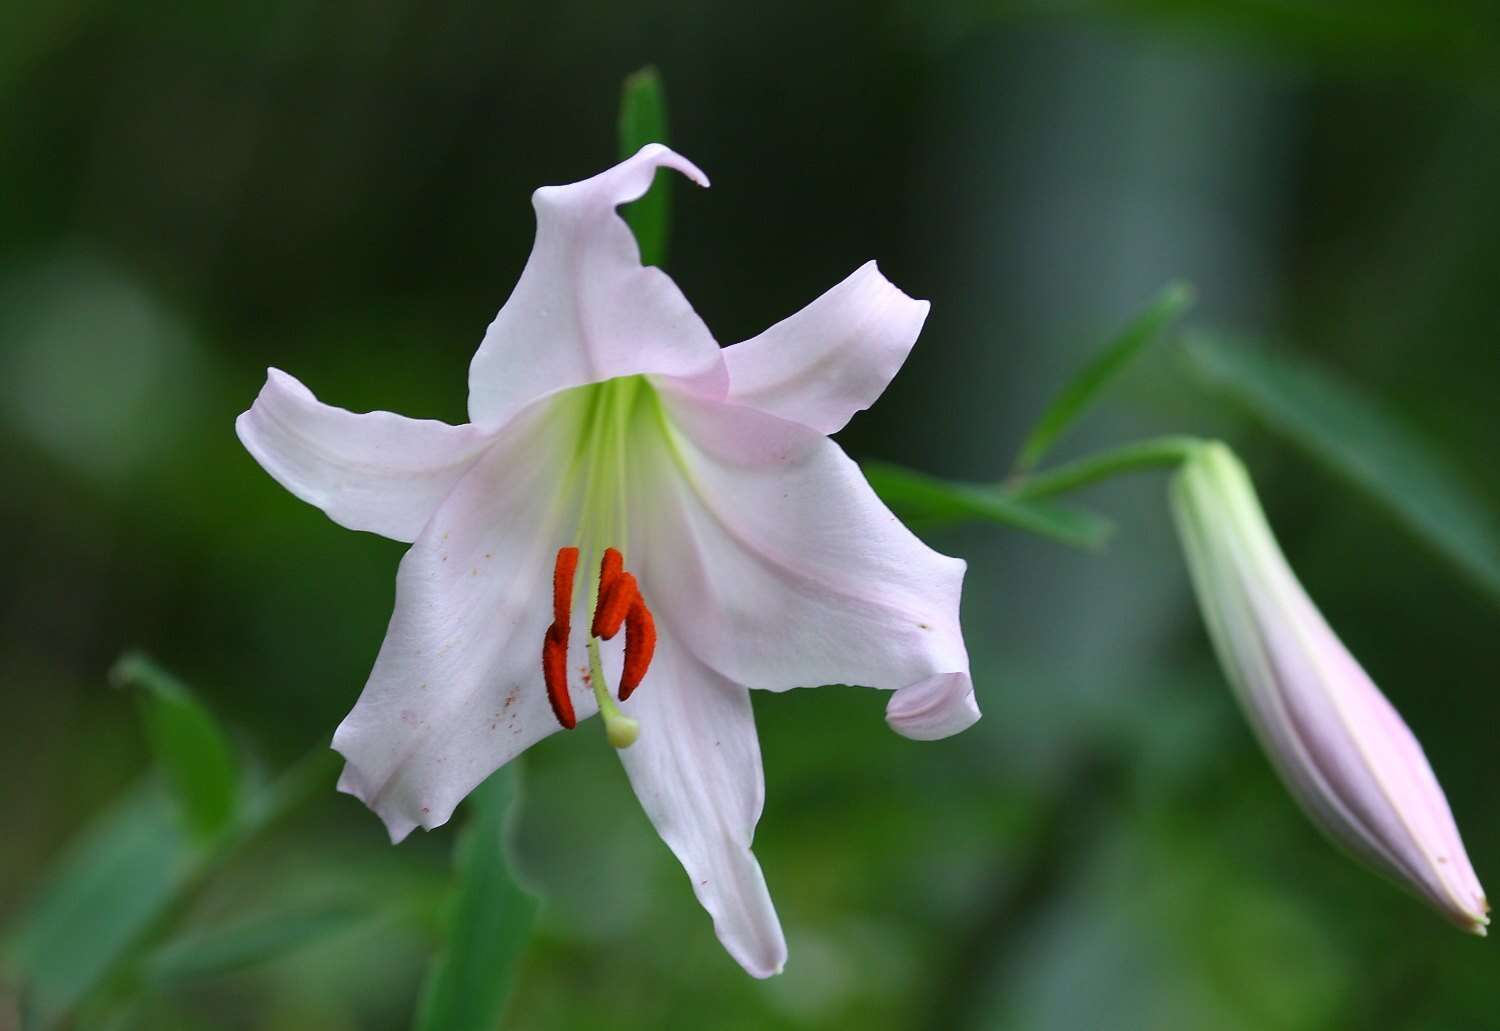 Image of Lilium japonicum Thunb.